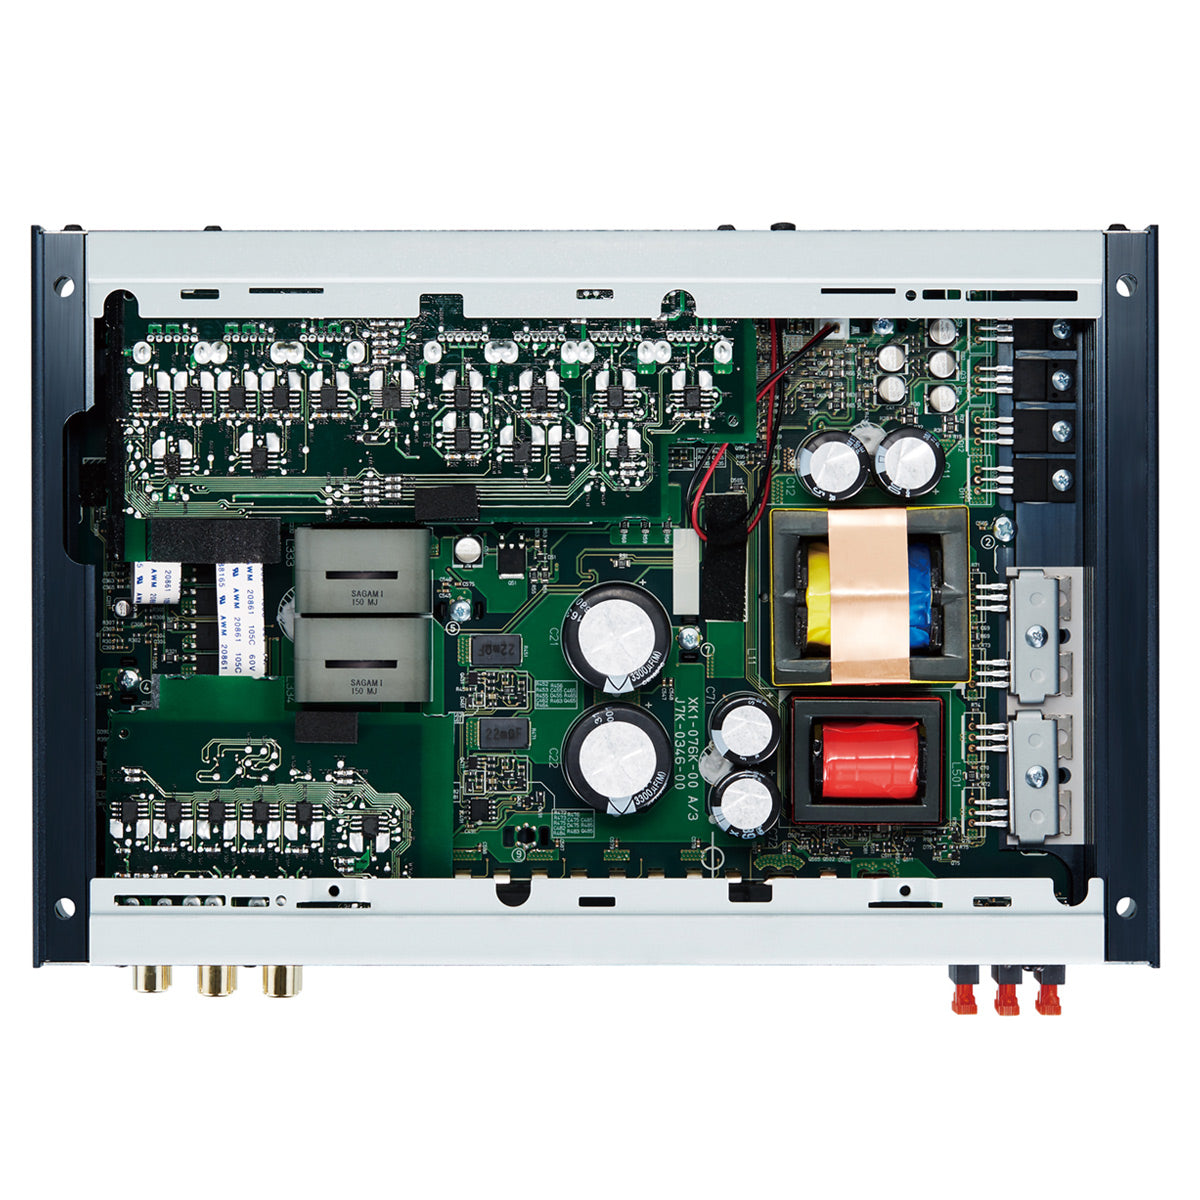 Kenwood XR901-5 eXcelon 900-Watt 5-Channel Amplifier